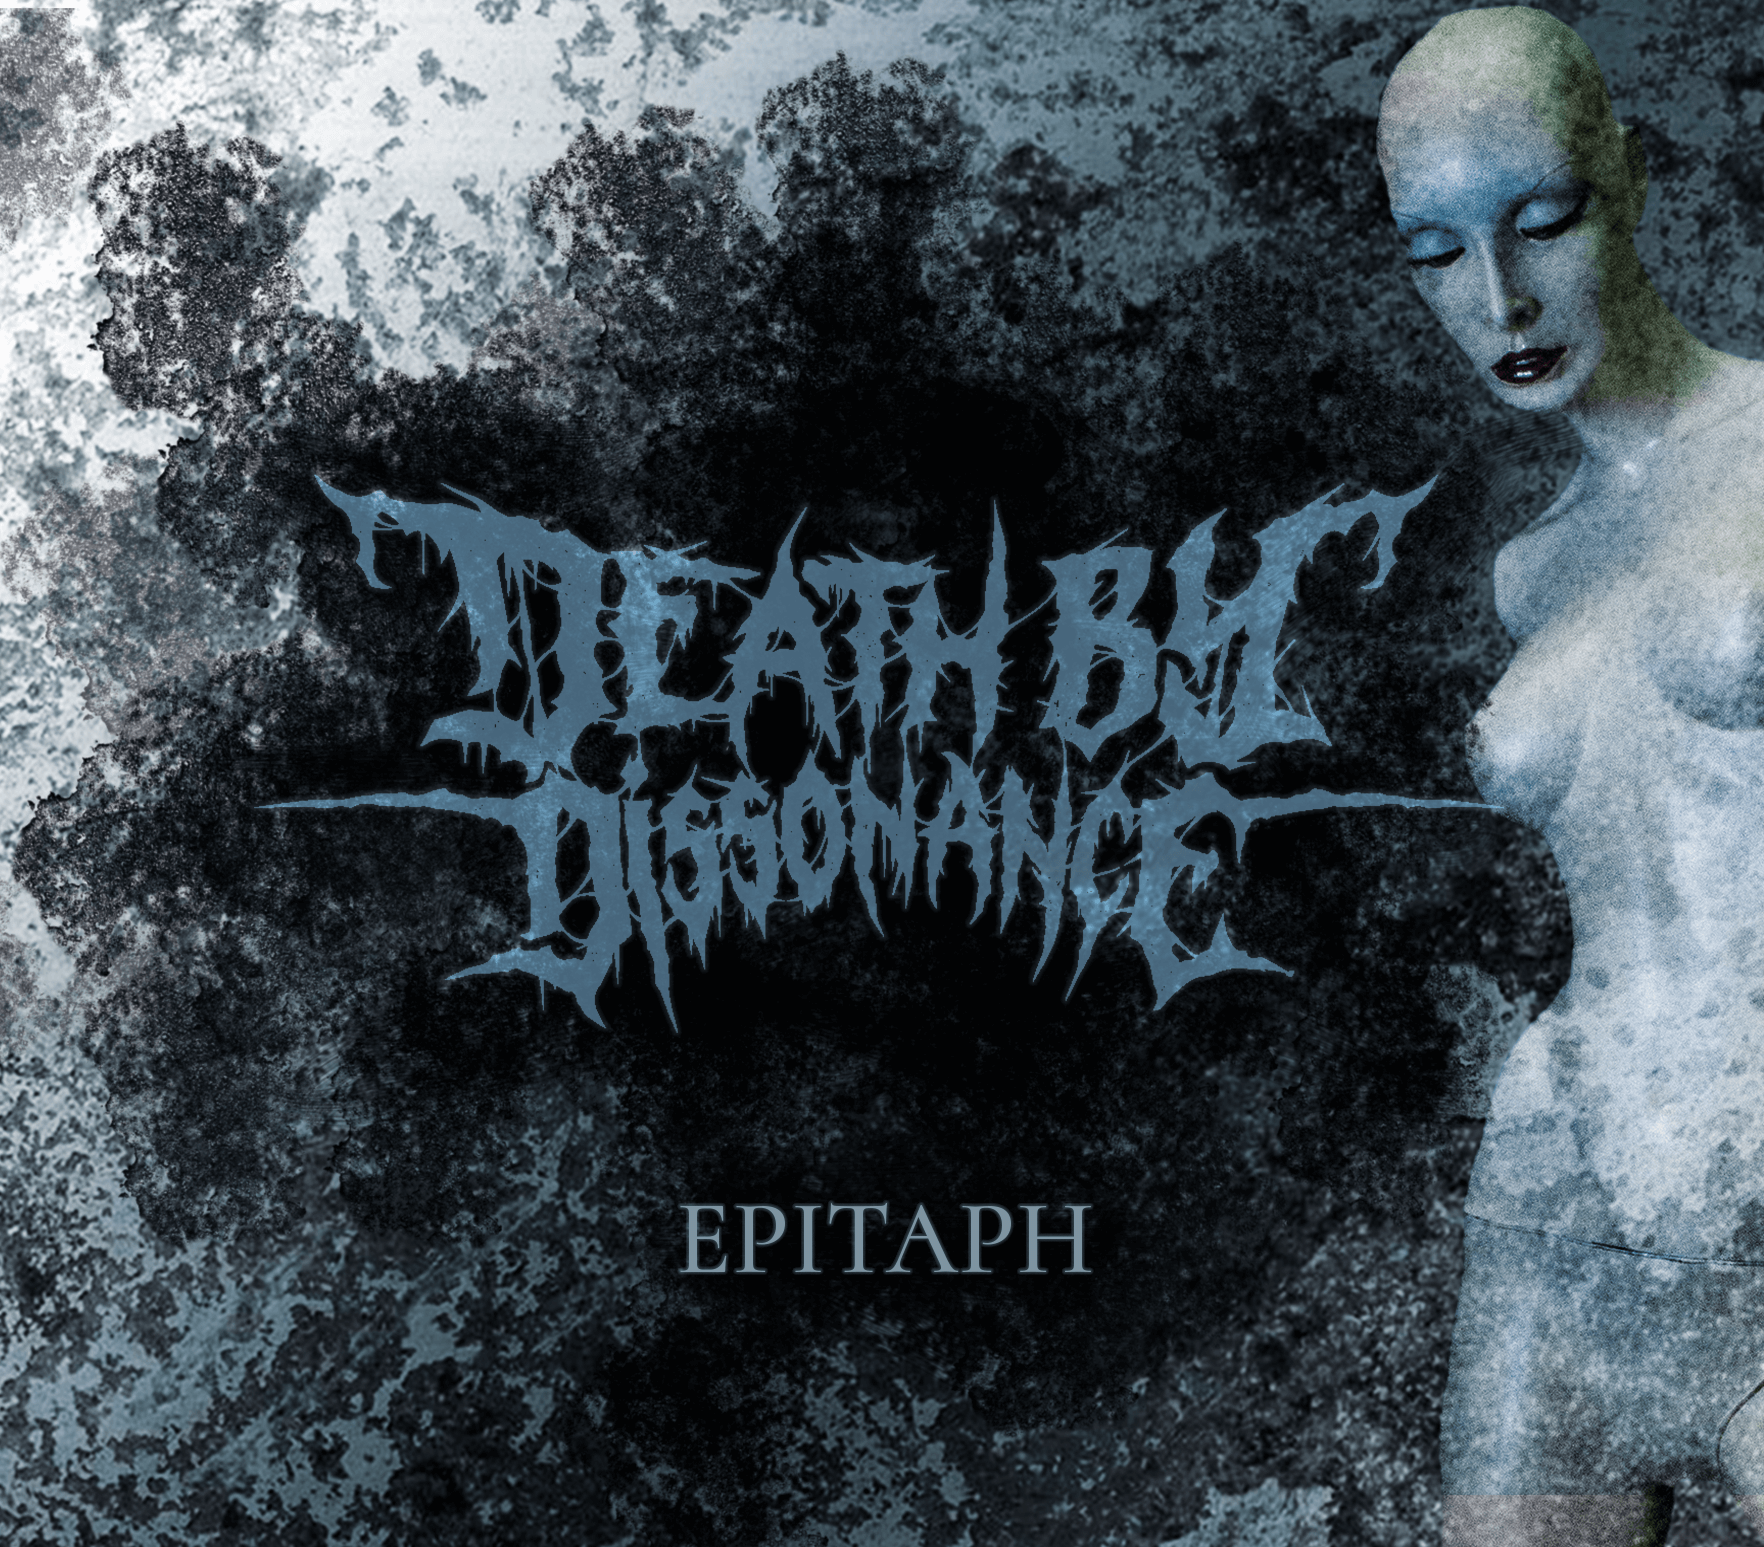 Death by Dissonance Logo